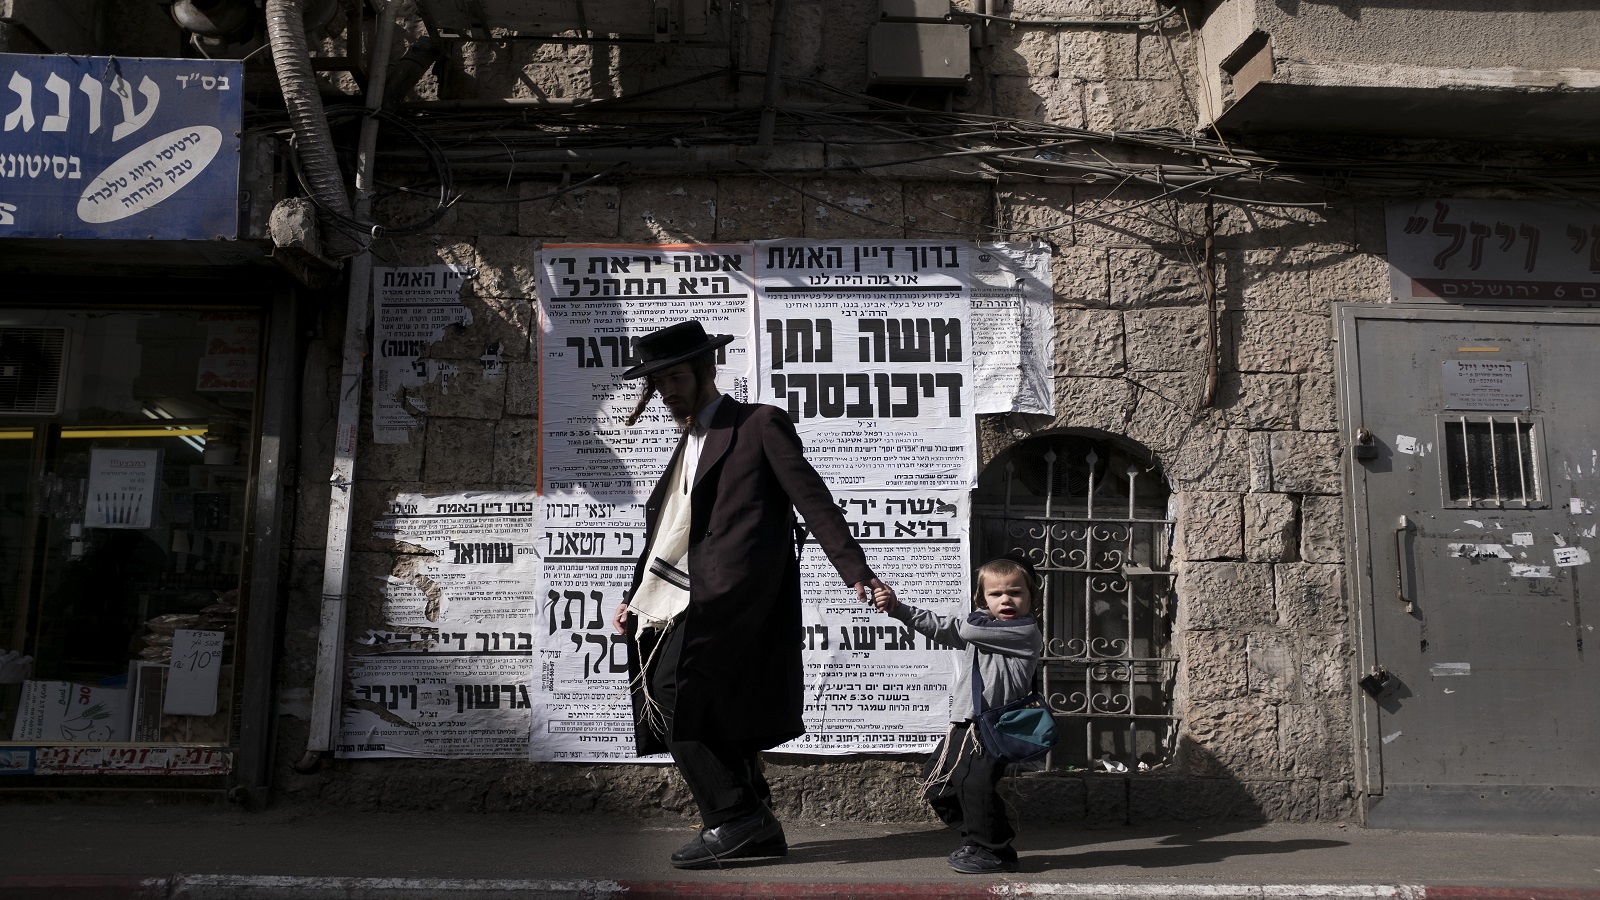 نتنياهو يطلق مشروع "تهويد" القدس..بعد تظاهرة تل أبيب السلمية